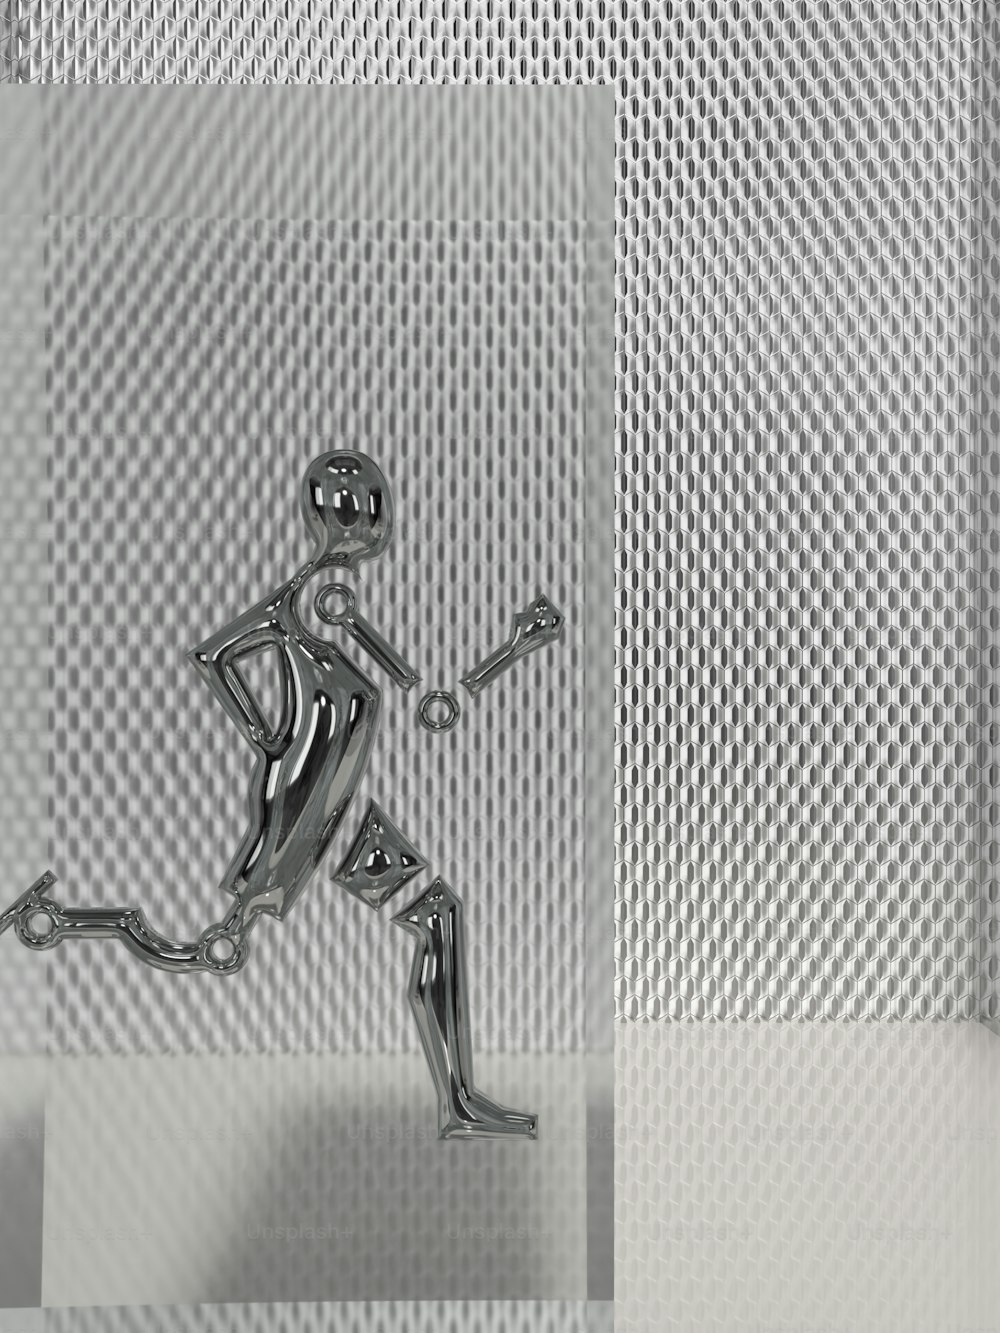 uma figura de metal está correndo em um fundo branco